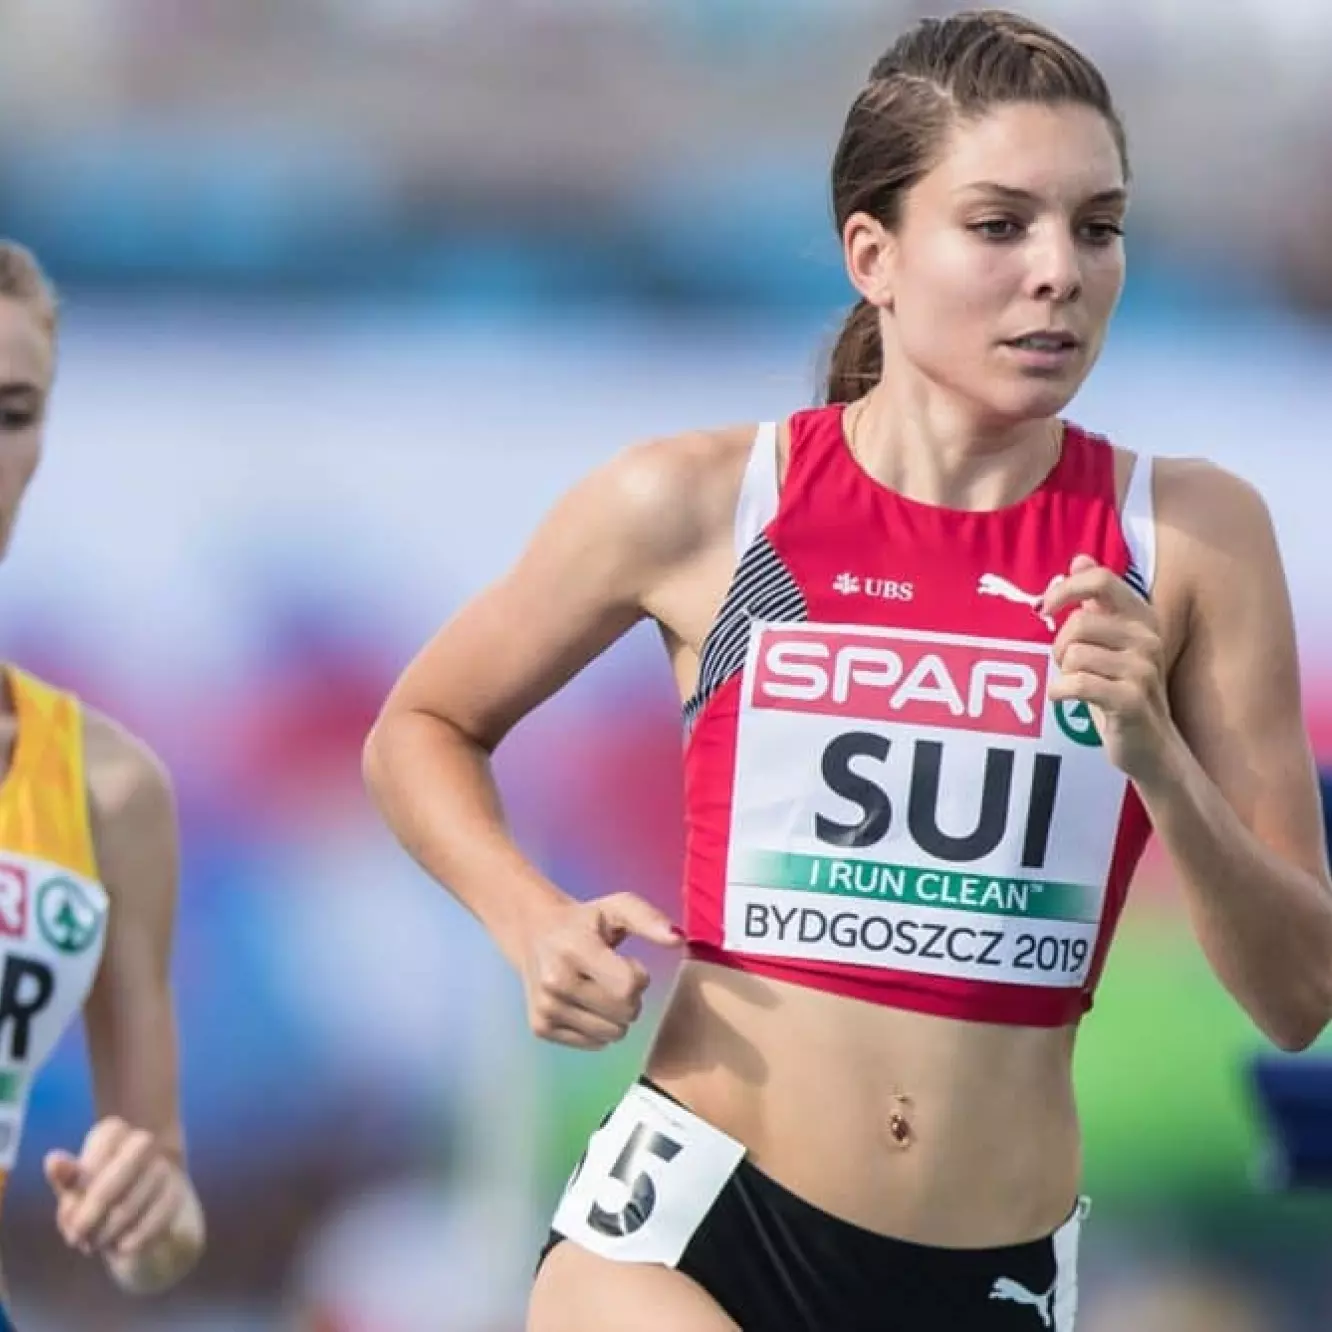 Chiara Scherrer, Praktikantin Physiotherapie am KSB, rennt bei einem Wettbewerb.